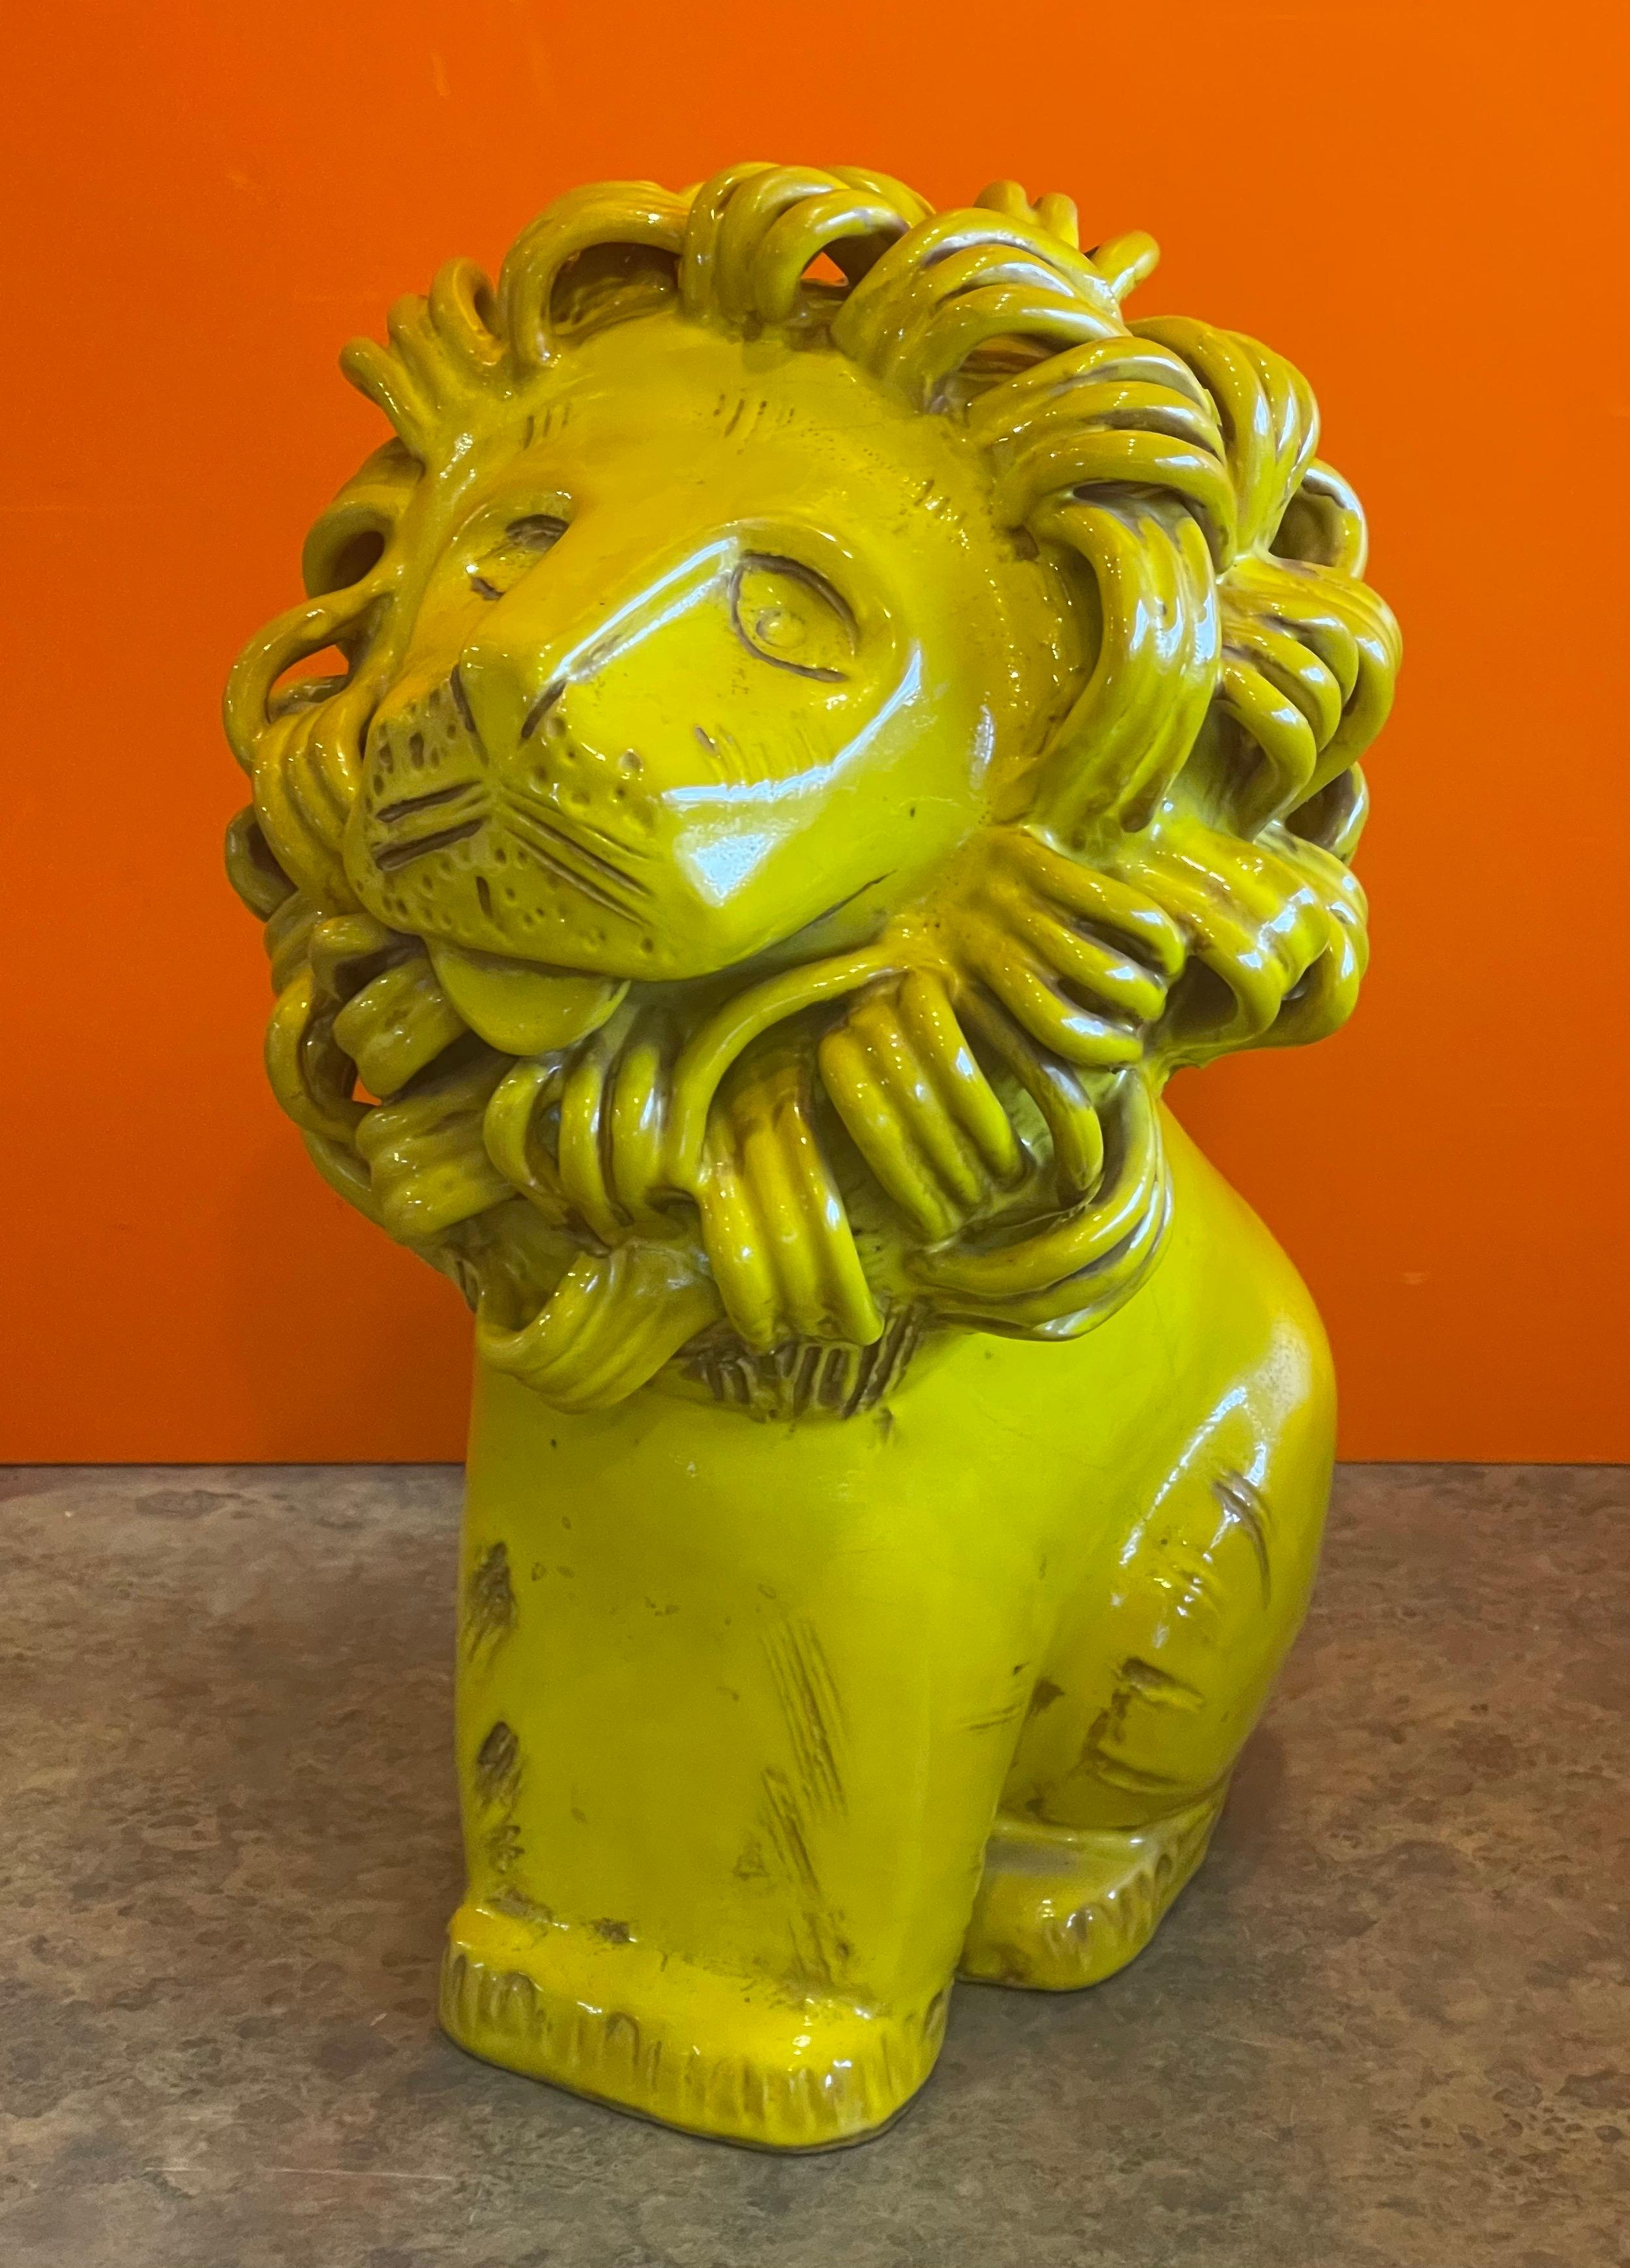 Vintage ceramiche / Keramik Löwe Skulptur von Aldo Londi für Bitossi Raymor, ca. 1960er Jahre. Das Stück ist in sehr gutem Vintage-Zustand mit einer großen Farbe, Textur und komplizierte Details; es wäre eine fantastische Ergänzung und Mittelstück